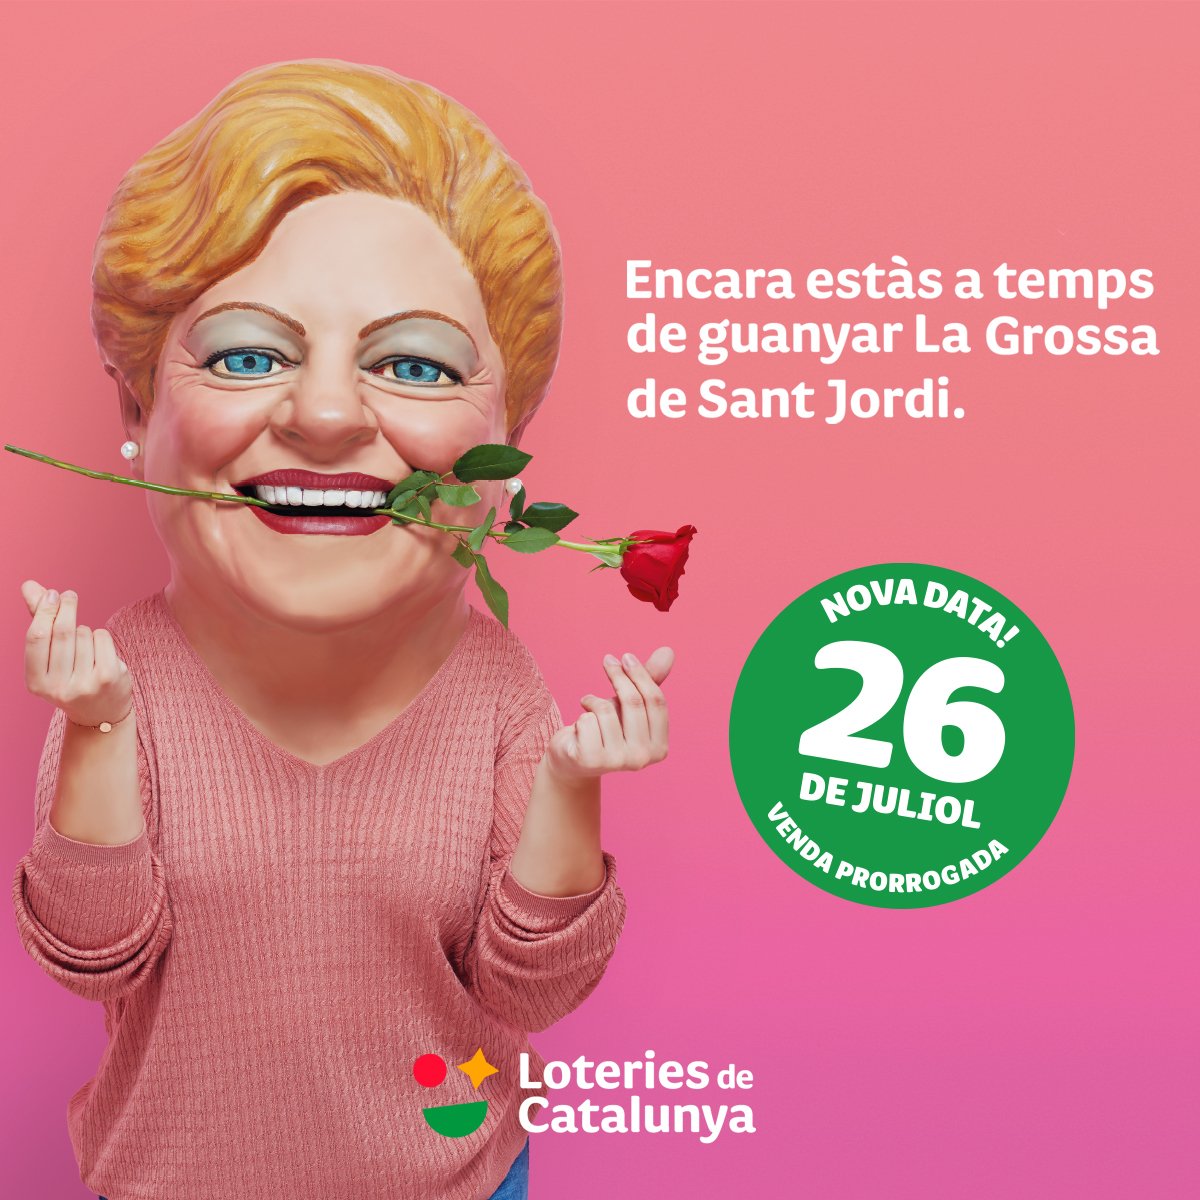 La Grossa de Sant Jordi 2020 | Los premios